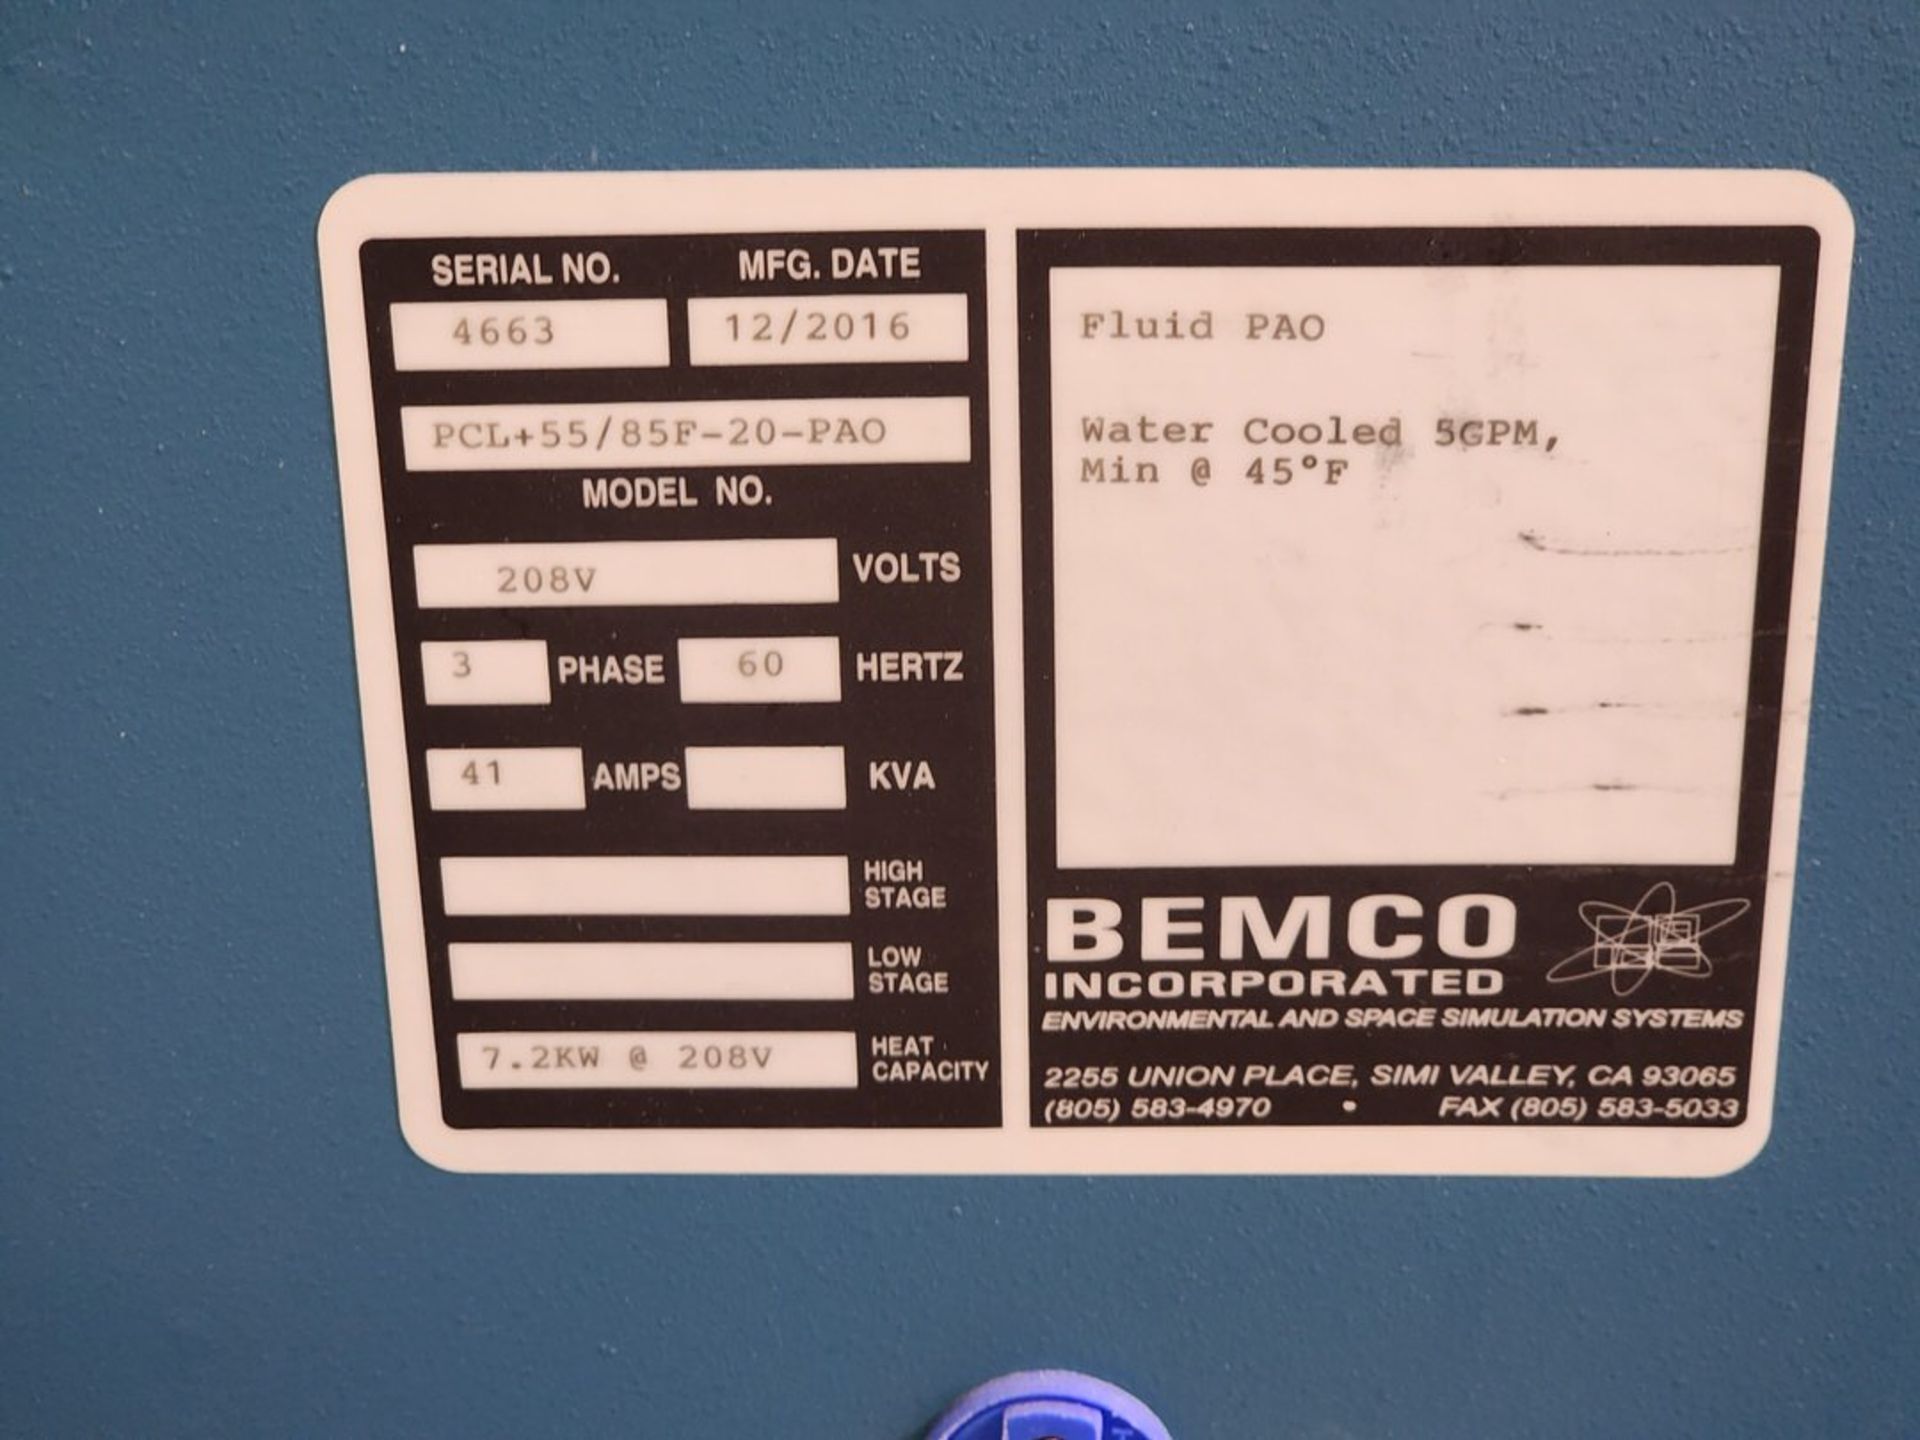 2016 Bemco Chiller 208V, 3PH, 60hZ, 41A - Image 7 of 7